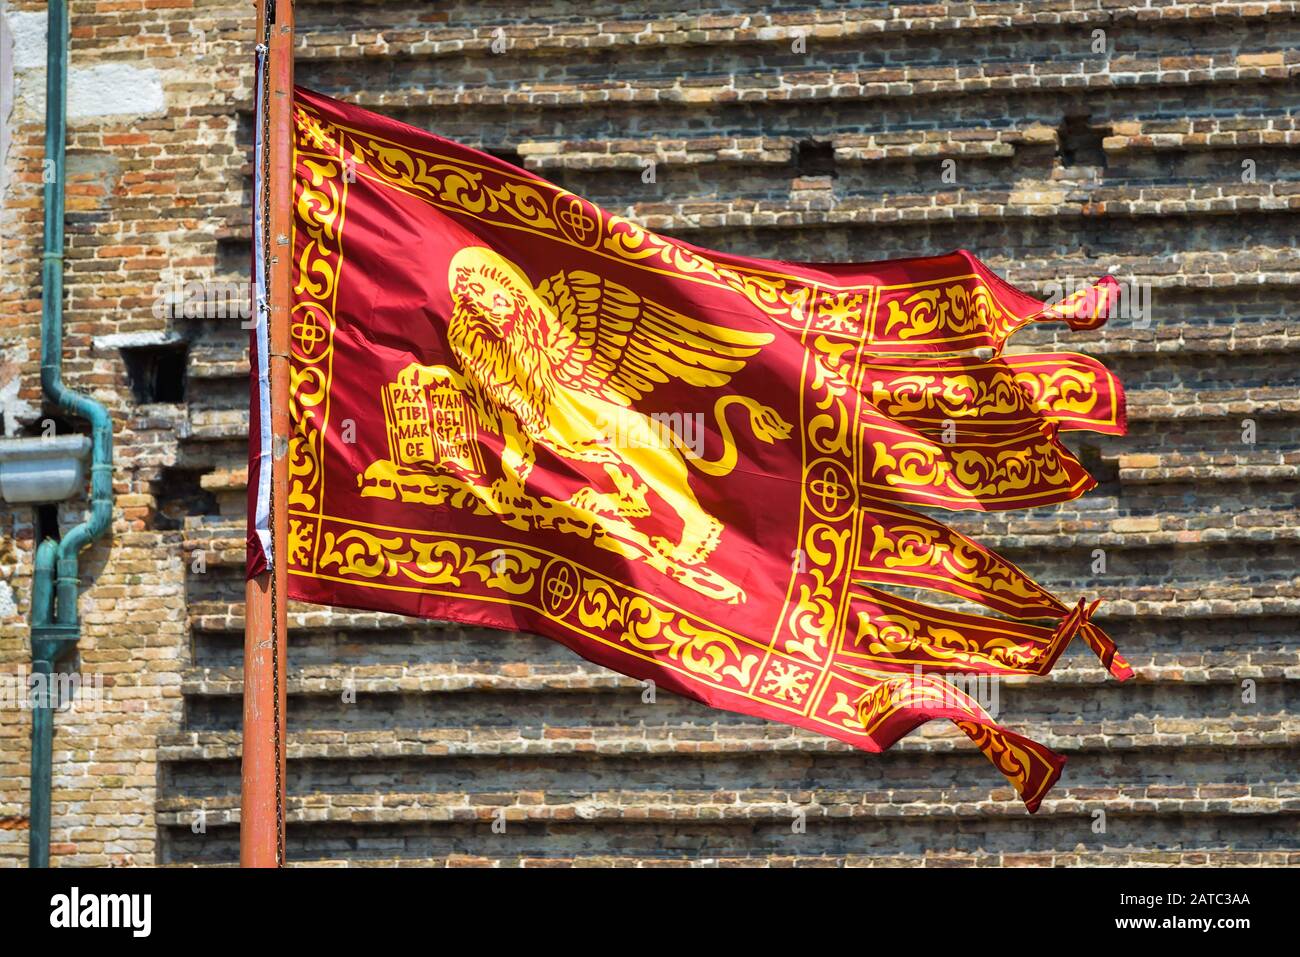 Bandera de Venecia ondeando en la calle en Venecia, Italia. León con alas doradas en la bandera roja, vista de primer plano. La vieja bandera veneciana está en el fondo de la casa vintage wa Foto de stock